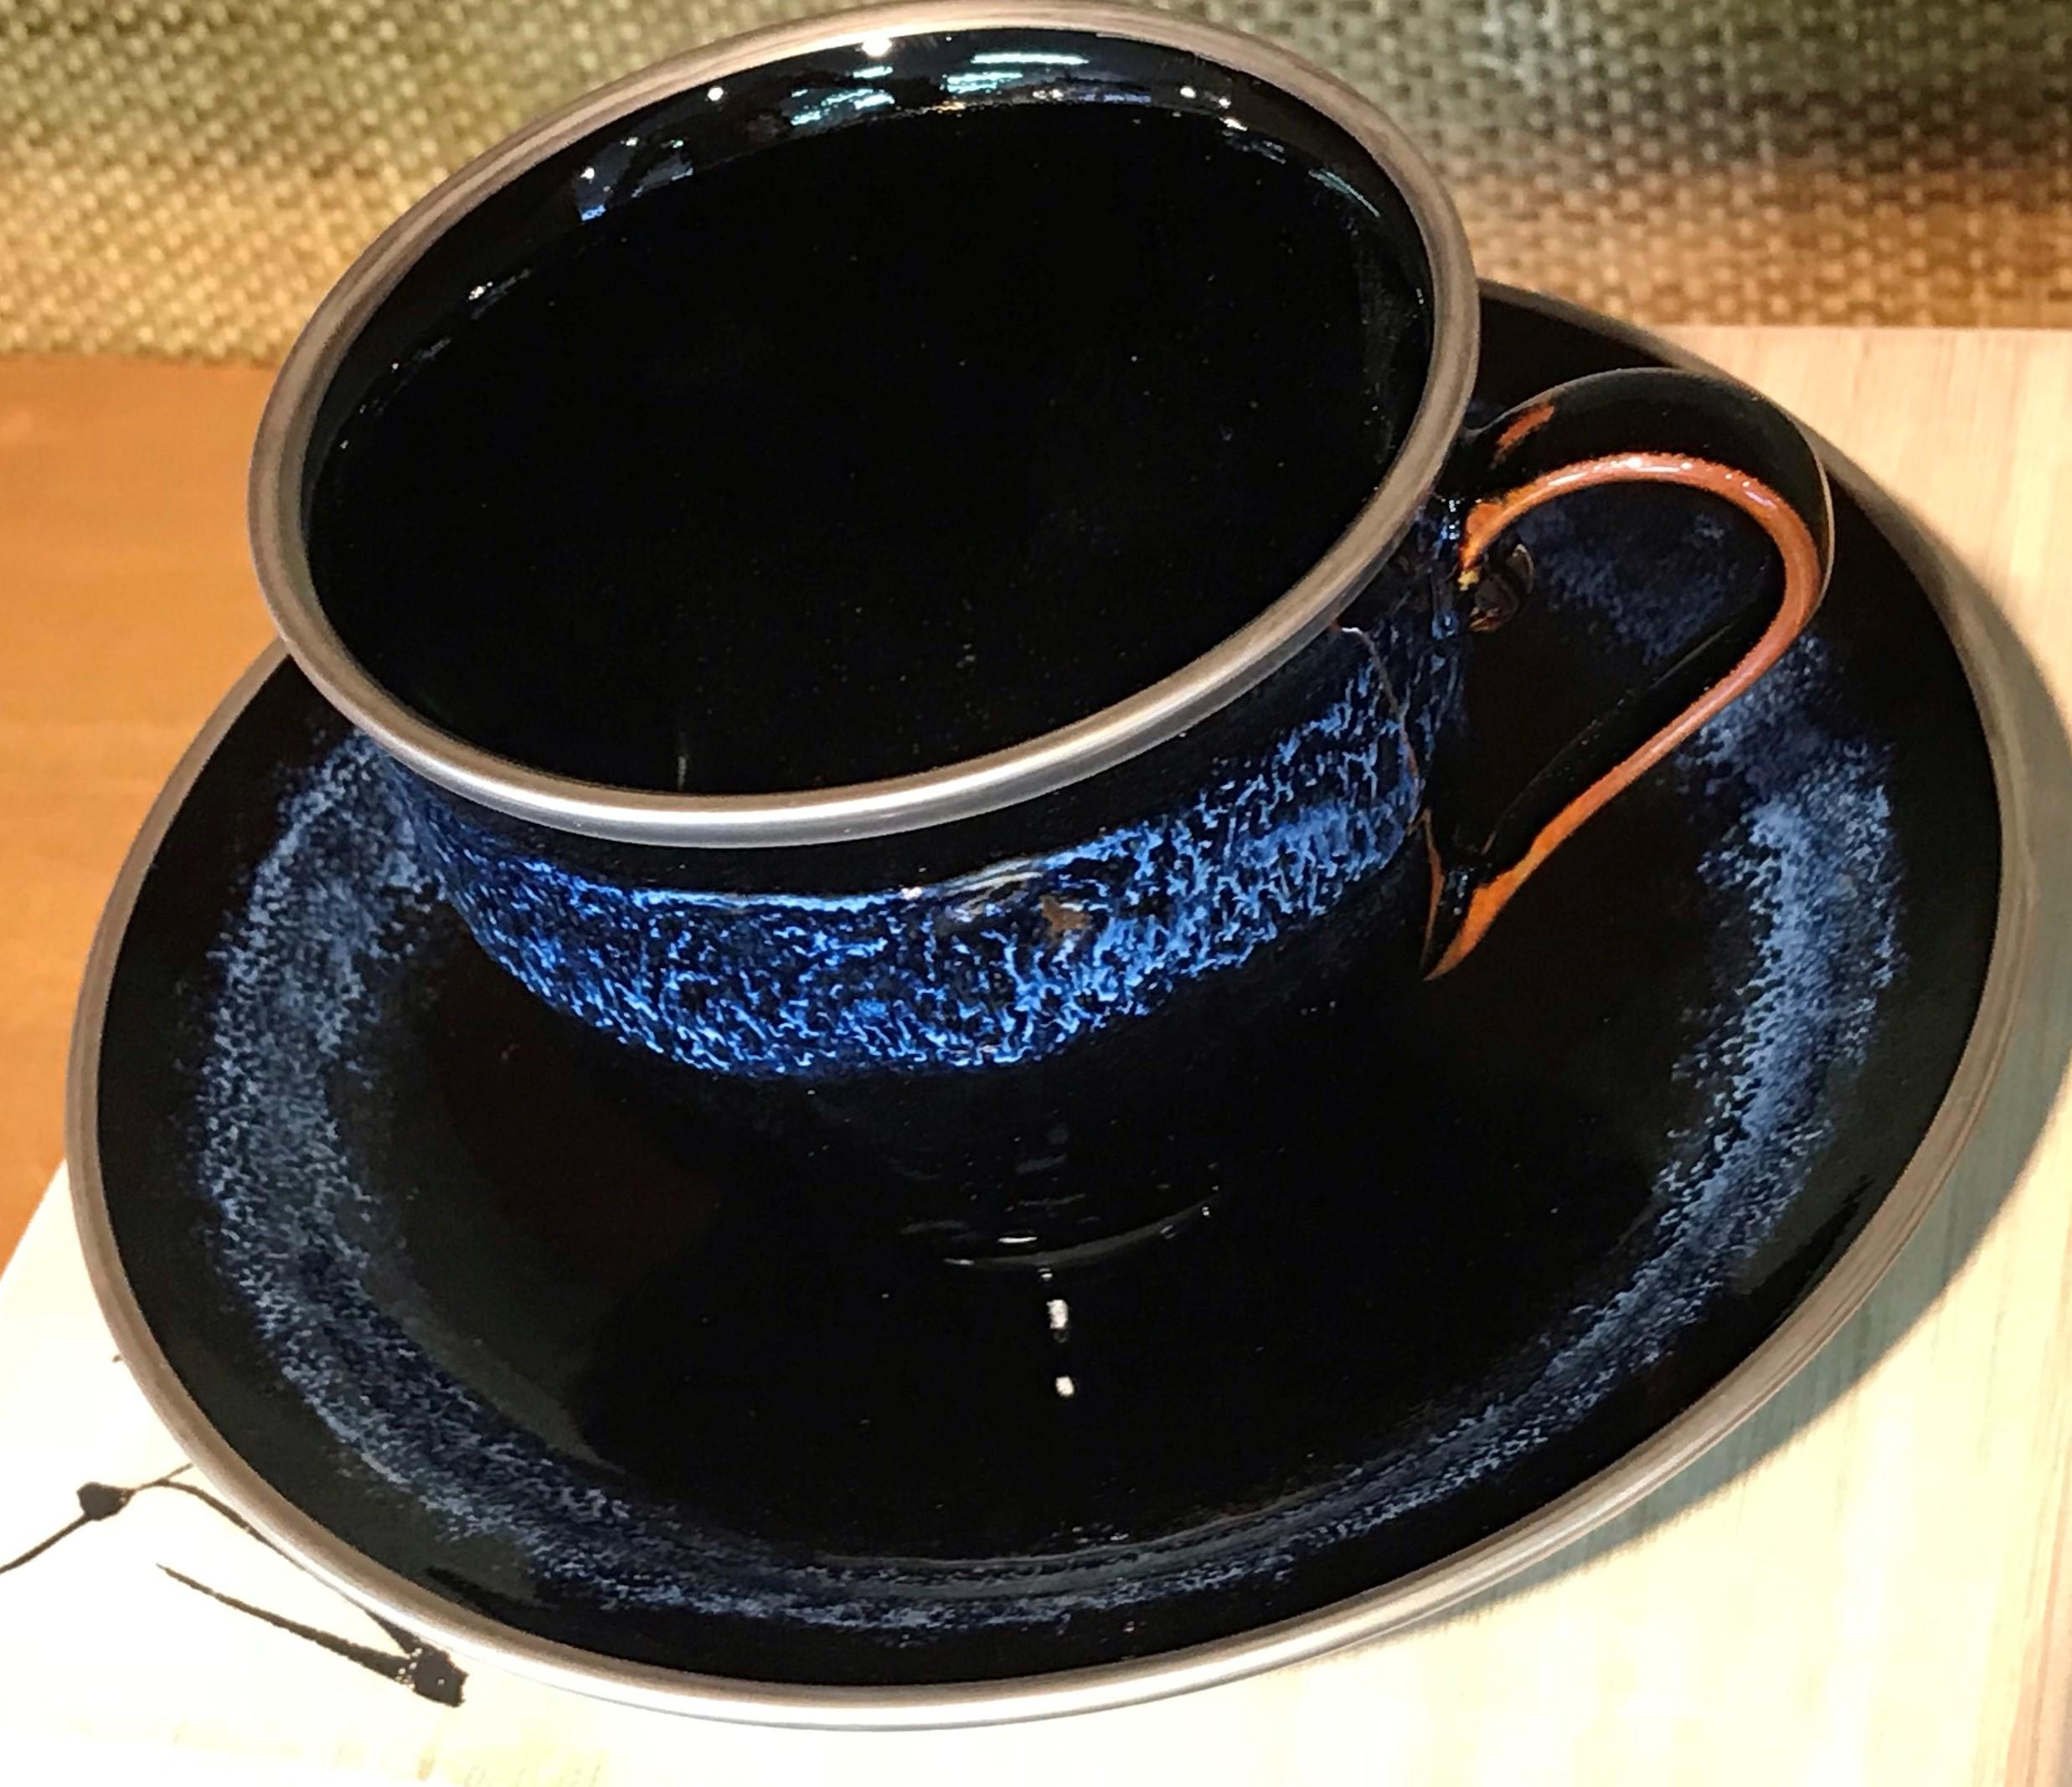 Einzigartige zeitgenössische japanische Tasse und Untertasse aus platinvergoldetem Porzellan, handglasiert in atemberaubendem Blau auf einem wunderschön geformten schwarzen Körper. Ein signiertes Werk aus einer der eindrucksvollsten Sammlungen des